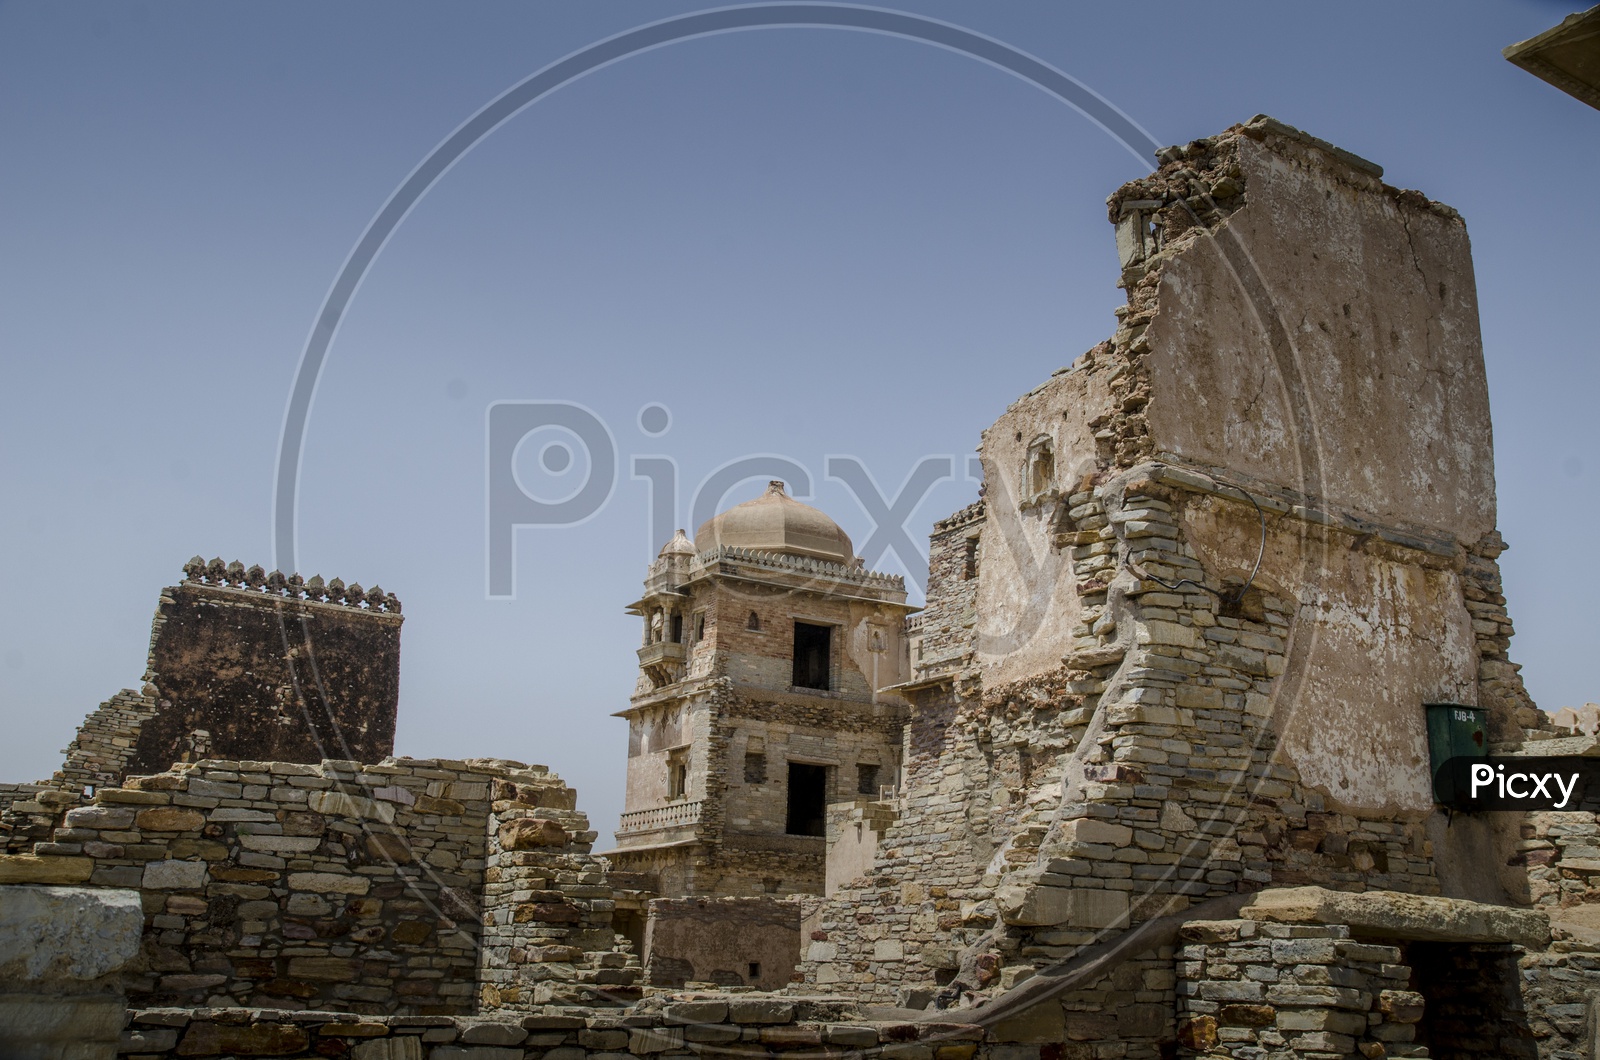 Chittorgarh Fort / Victory Tower Chittorgarh UNESCO World Heritage Site